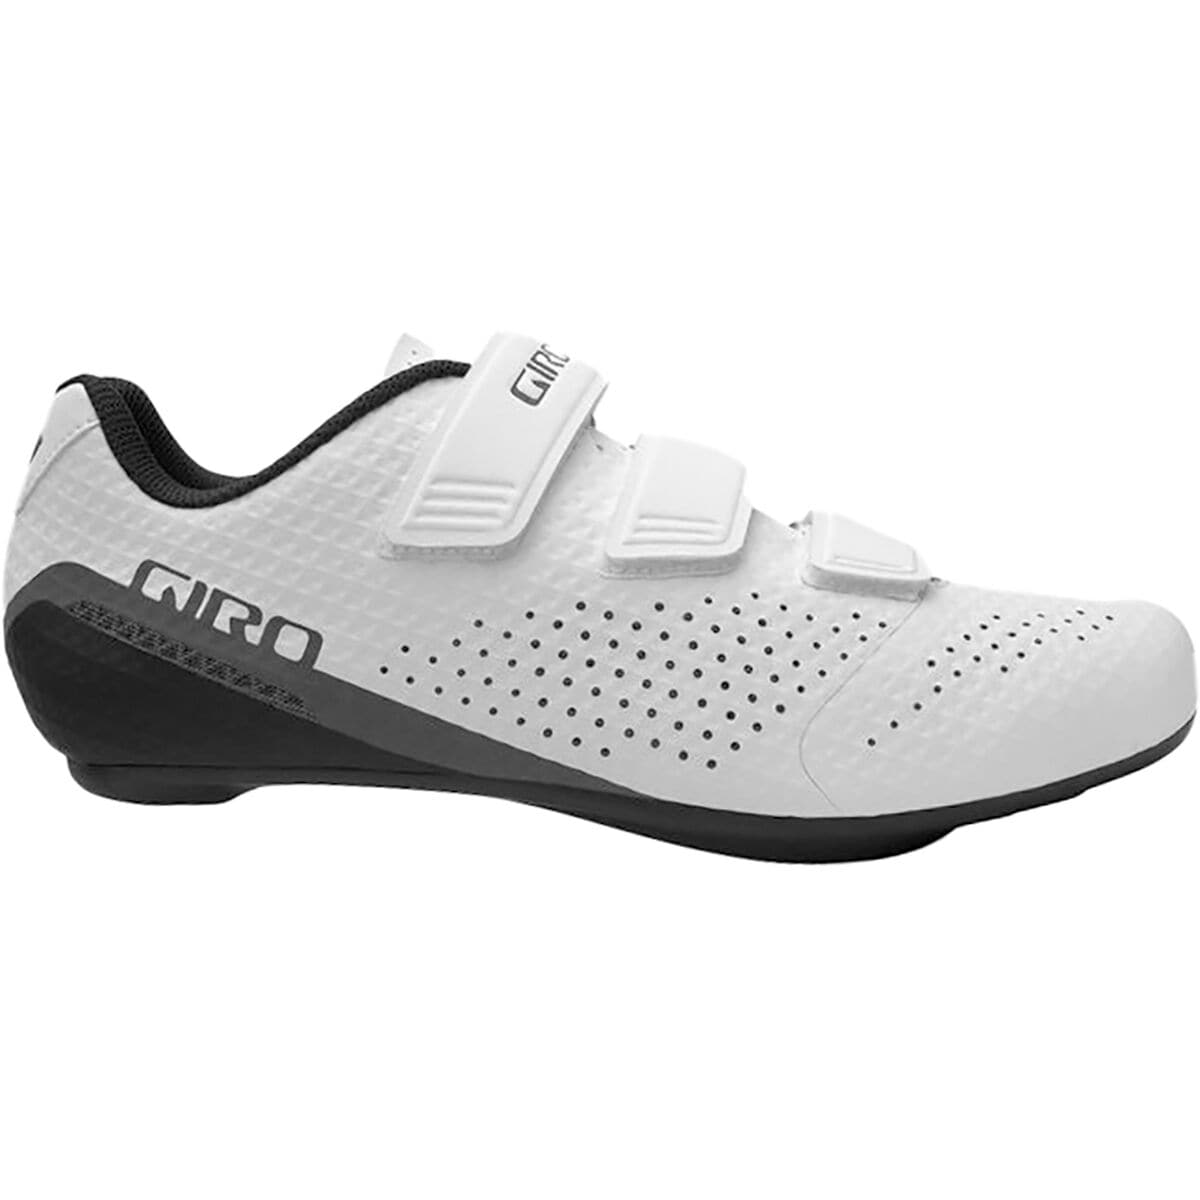 Photos - Cycling Shoes Giro Stylus Cycling Shoe - Men's 